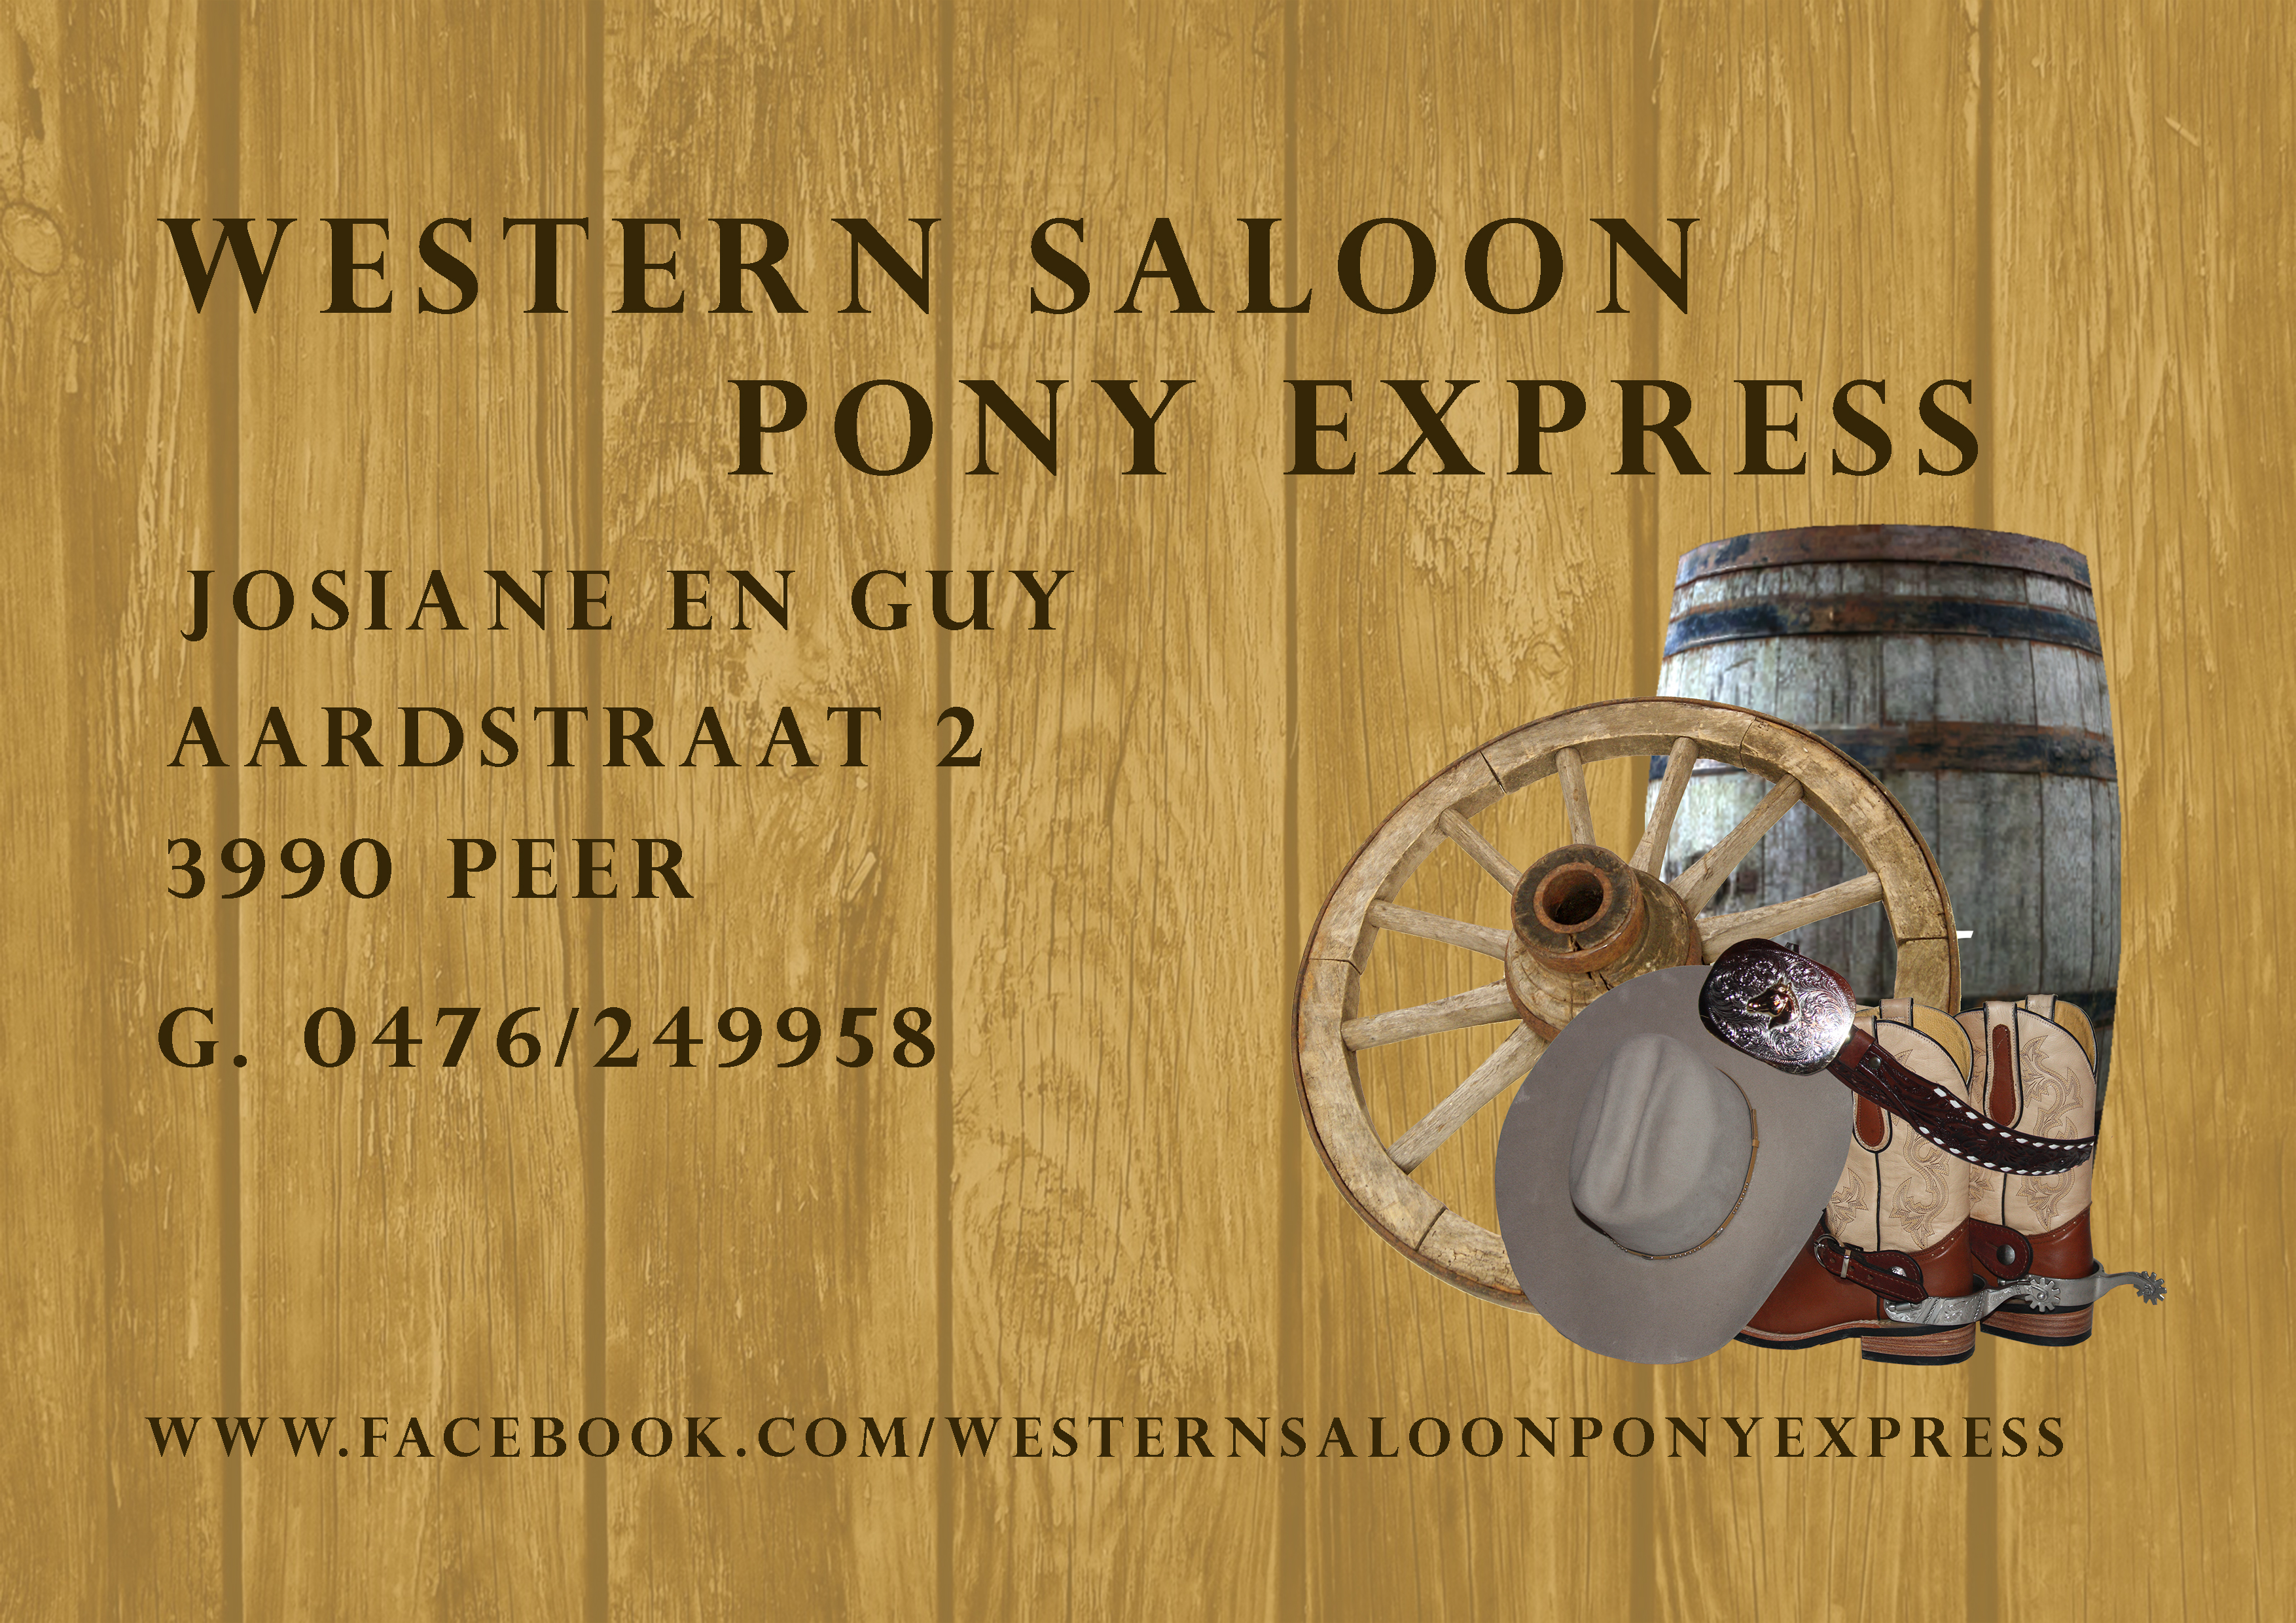 Western Saloon Pony Express